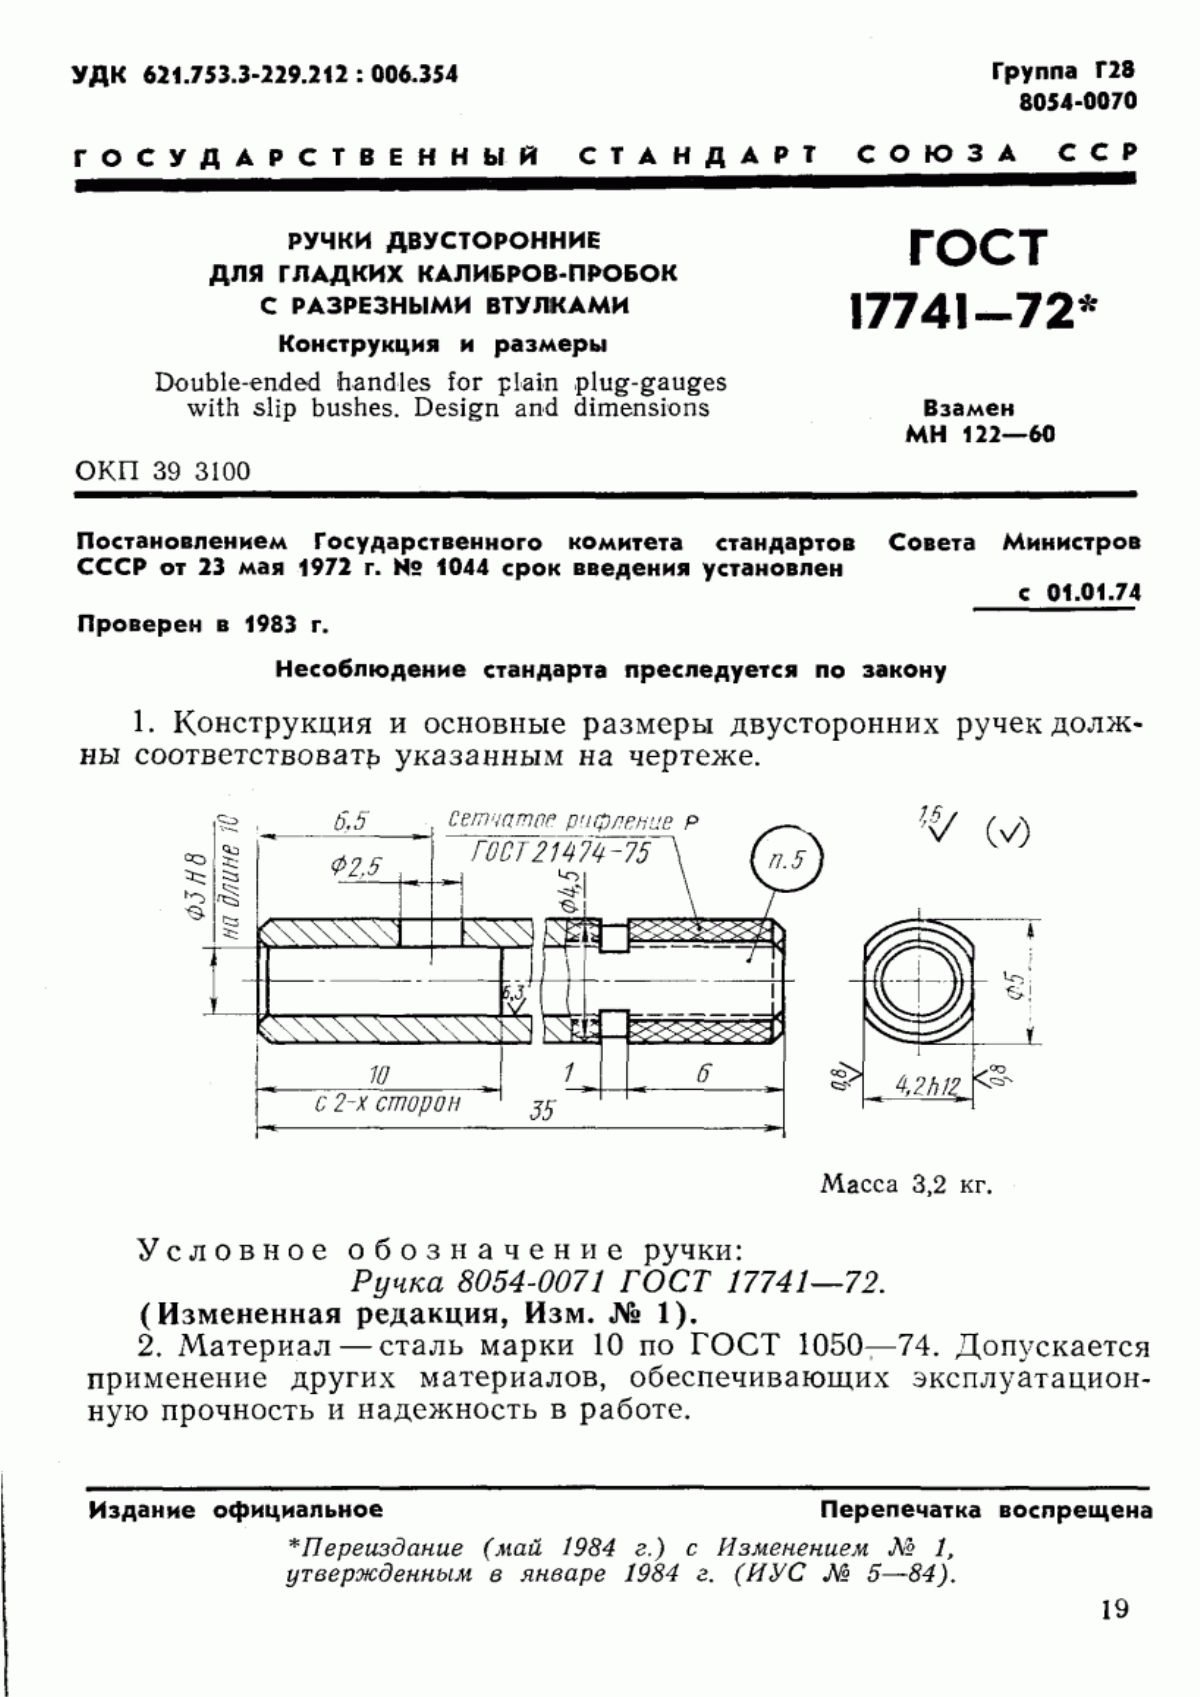 ГОСТ 17741-72 Ручки двусторонние для гладких калибров-пробок с разрезными втулками. Конструкция и размеры